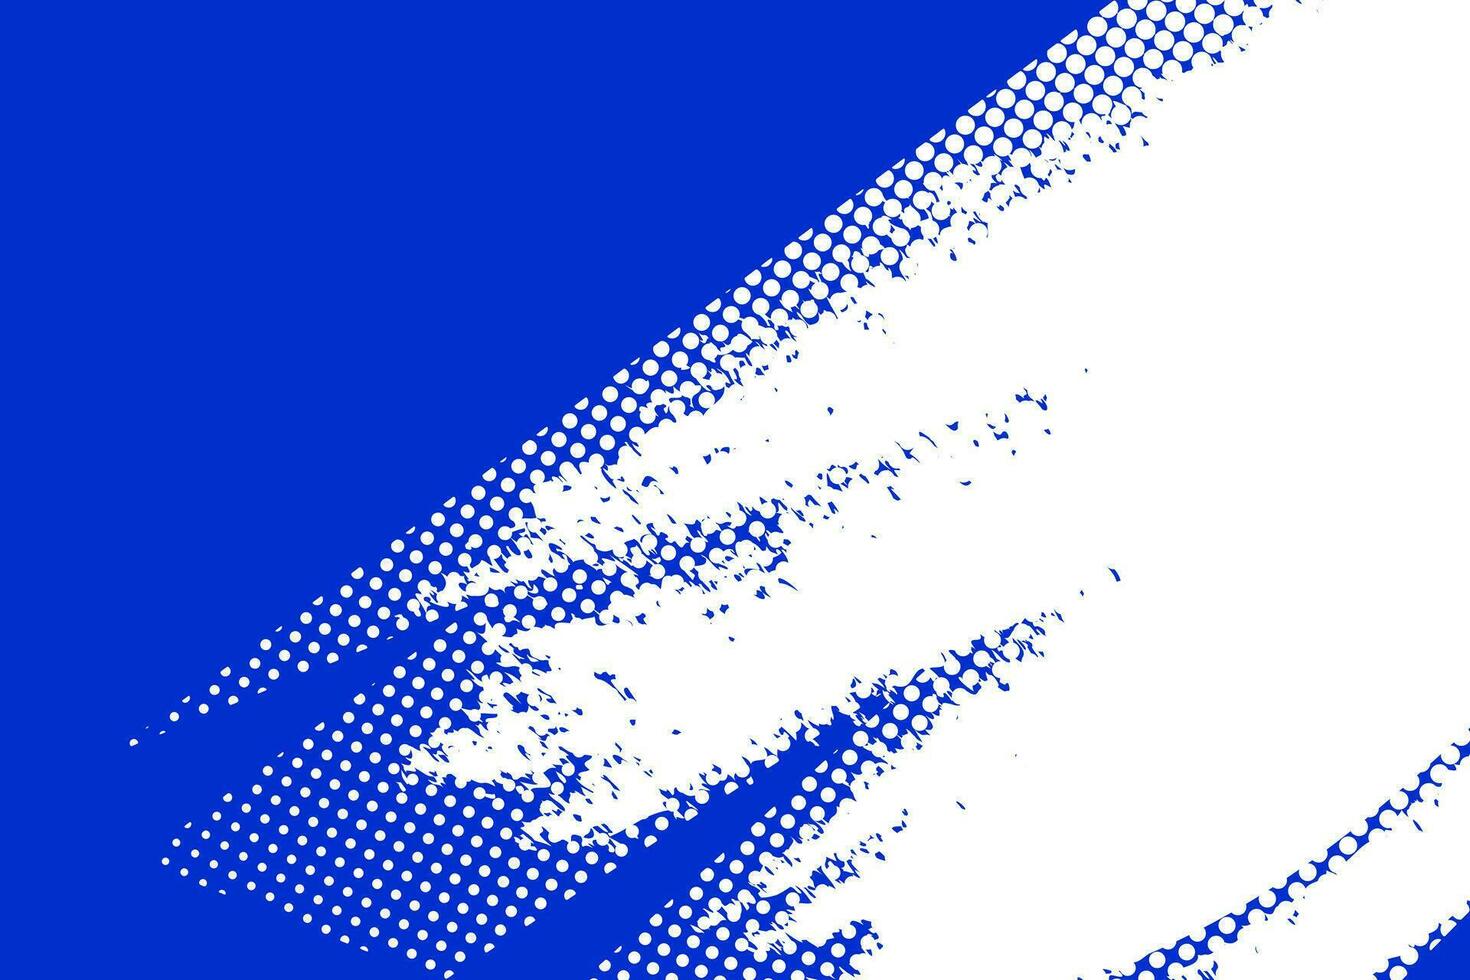 blauw en wit plons beroerte grunge achtergrond. kleur halftone knal kunst ontwerp textuur. grappig boek grunge stippel effect vector